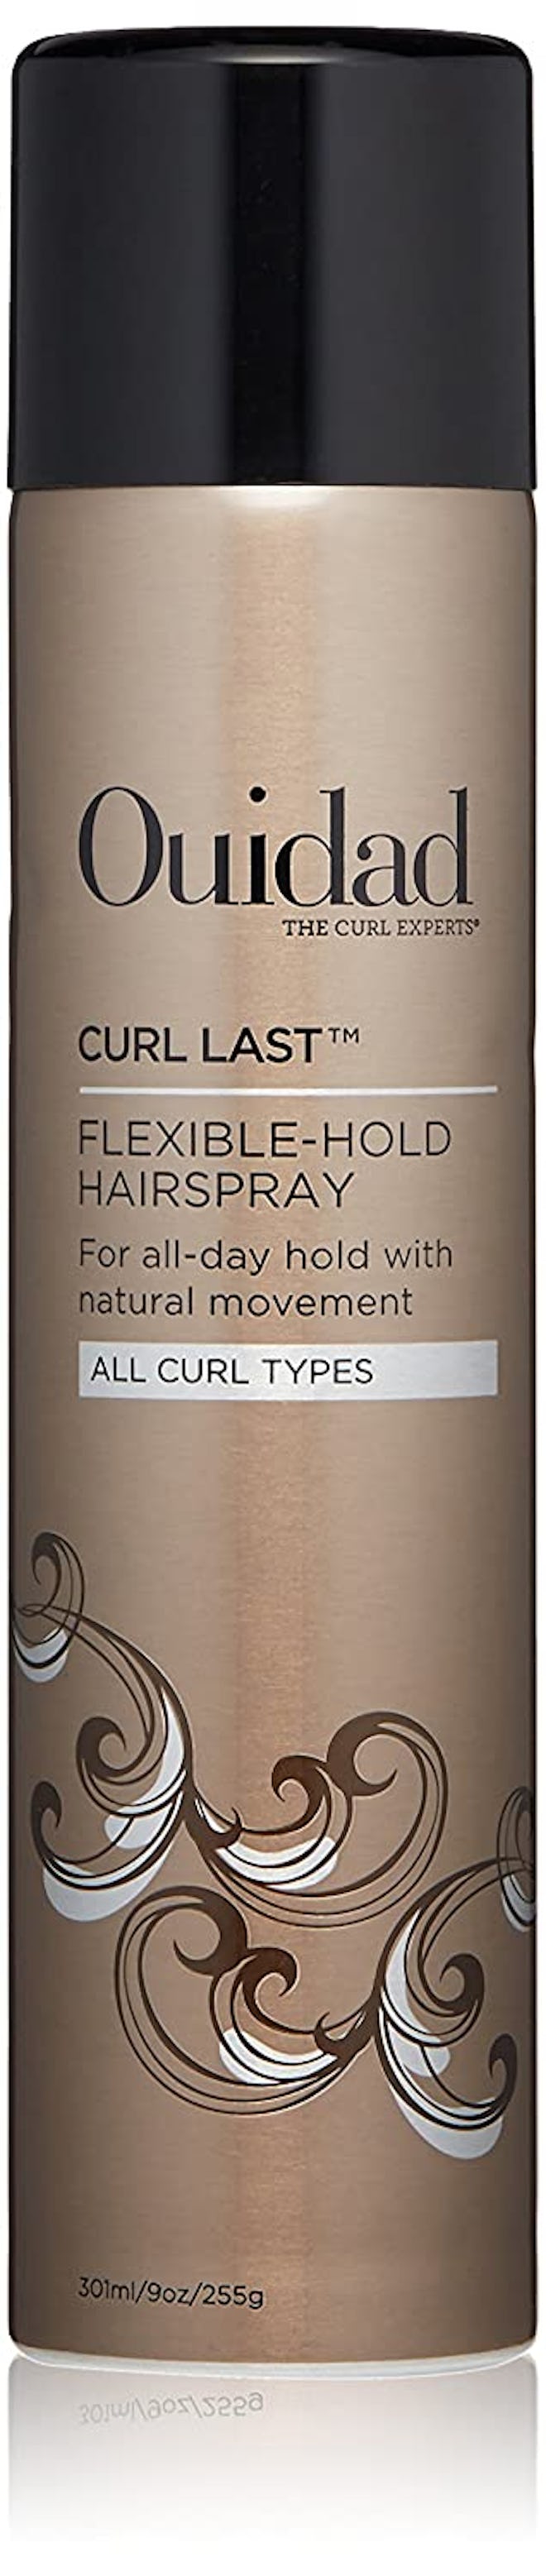 ouidad curl last flexible hold hairspray is the best buildable hold hairspray for curly hair